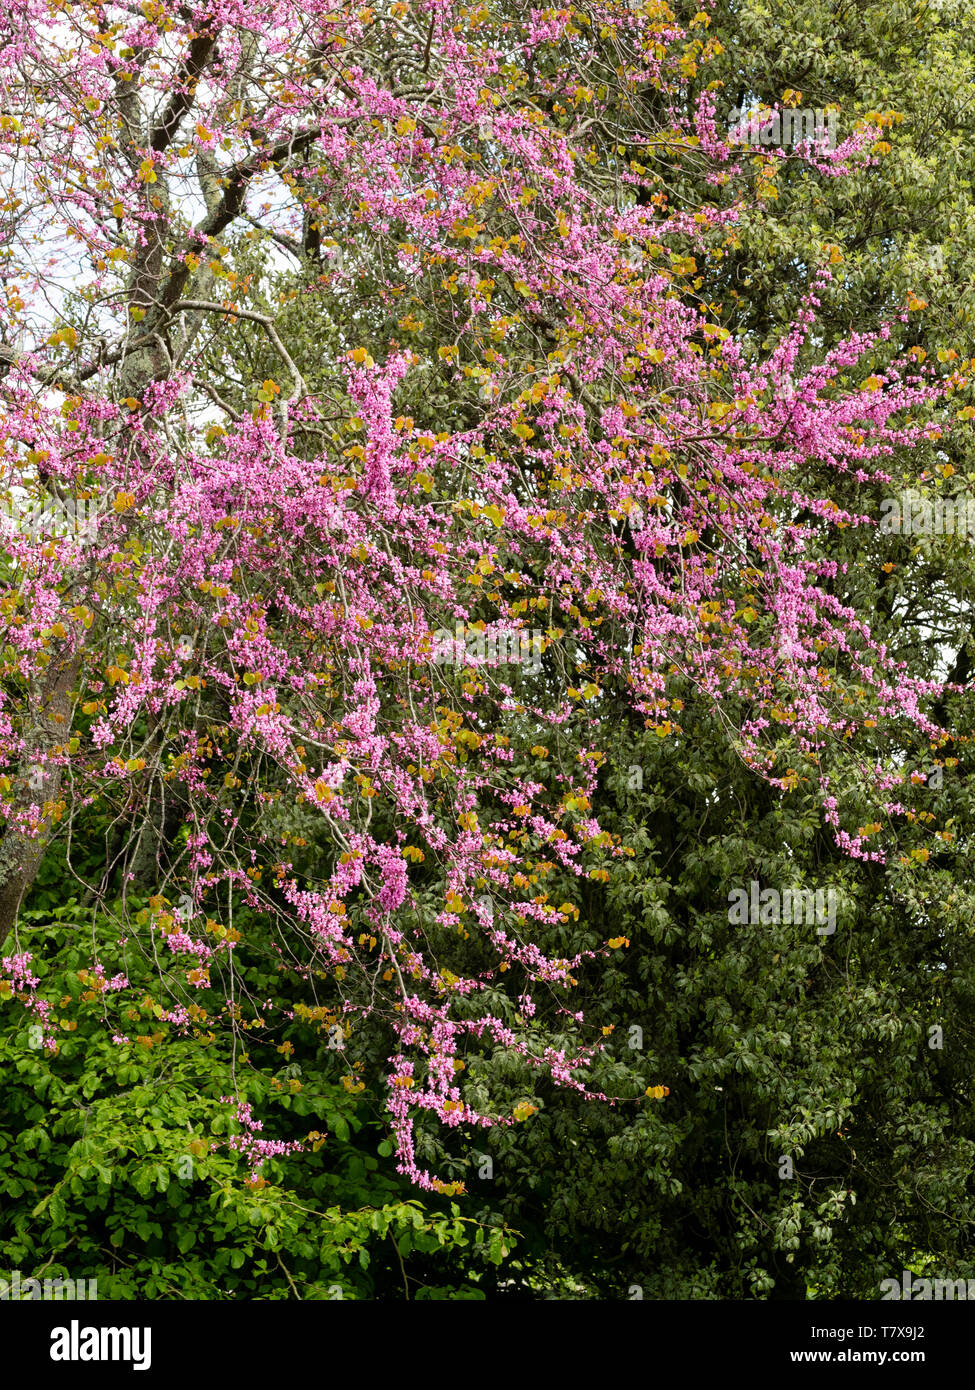 Rosa Blumen kleide die Zweige der Hardy Judas Cercis siliquastrum Baum, Stockfoto